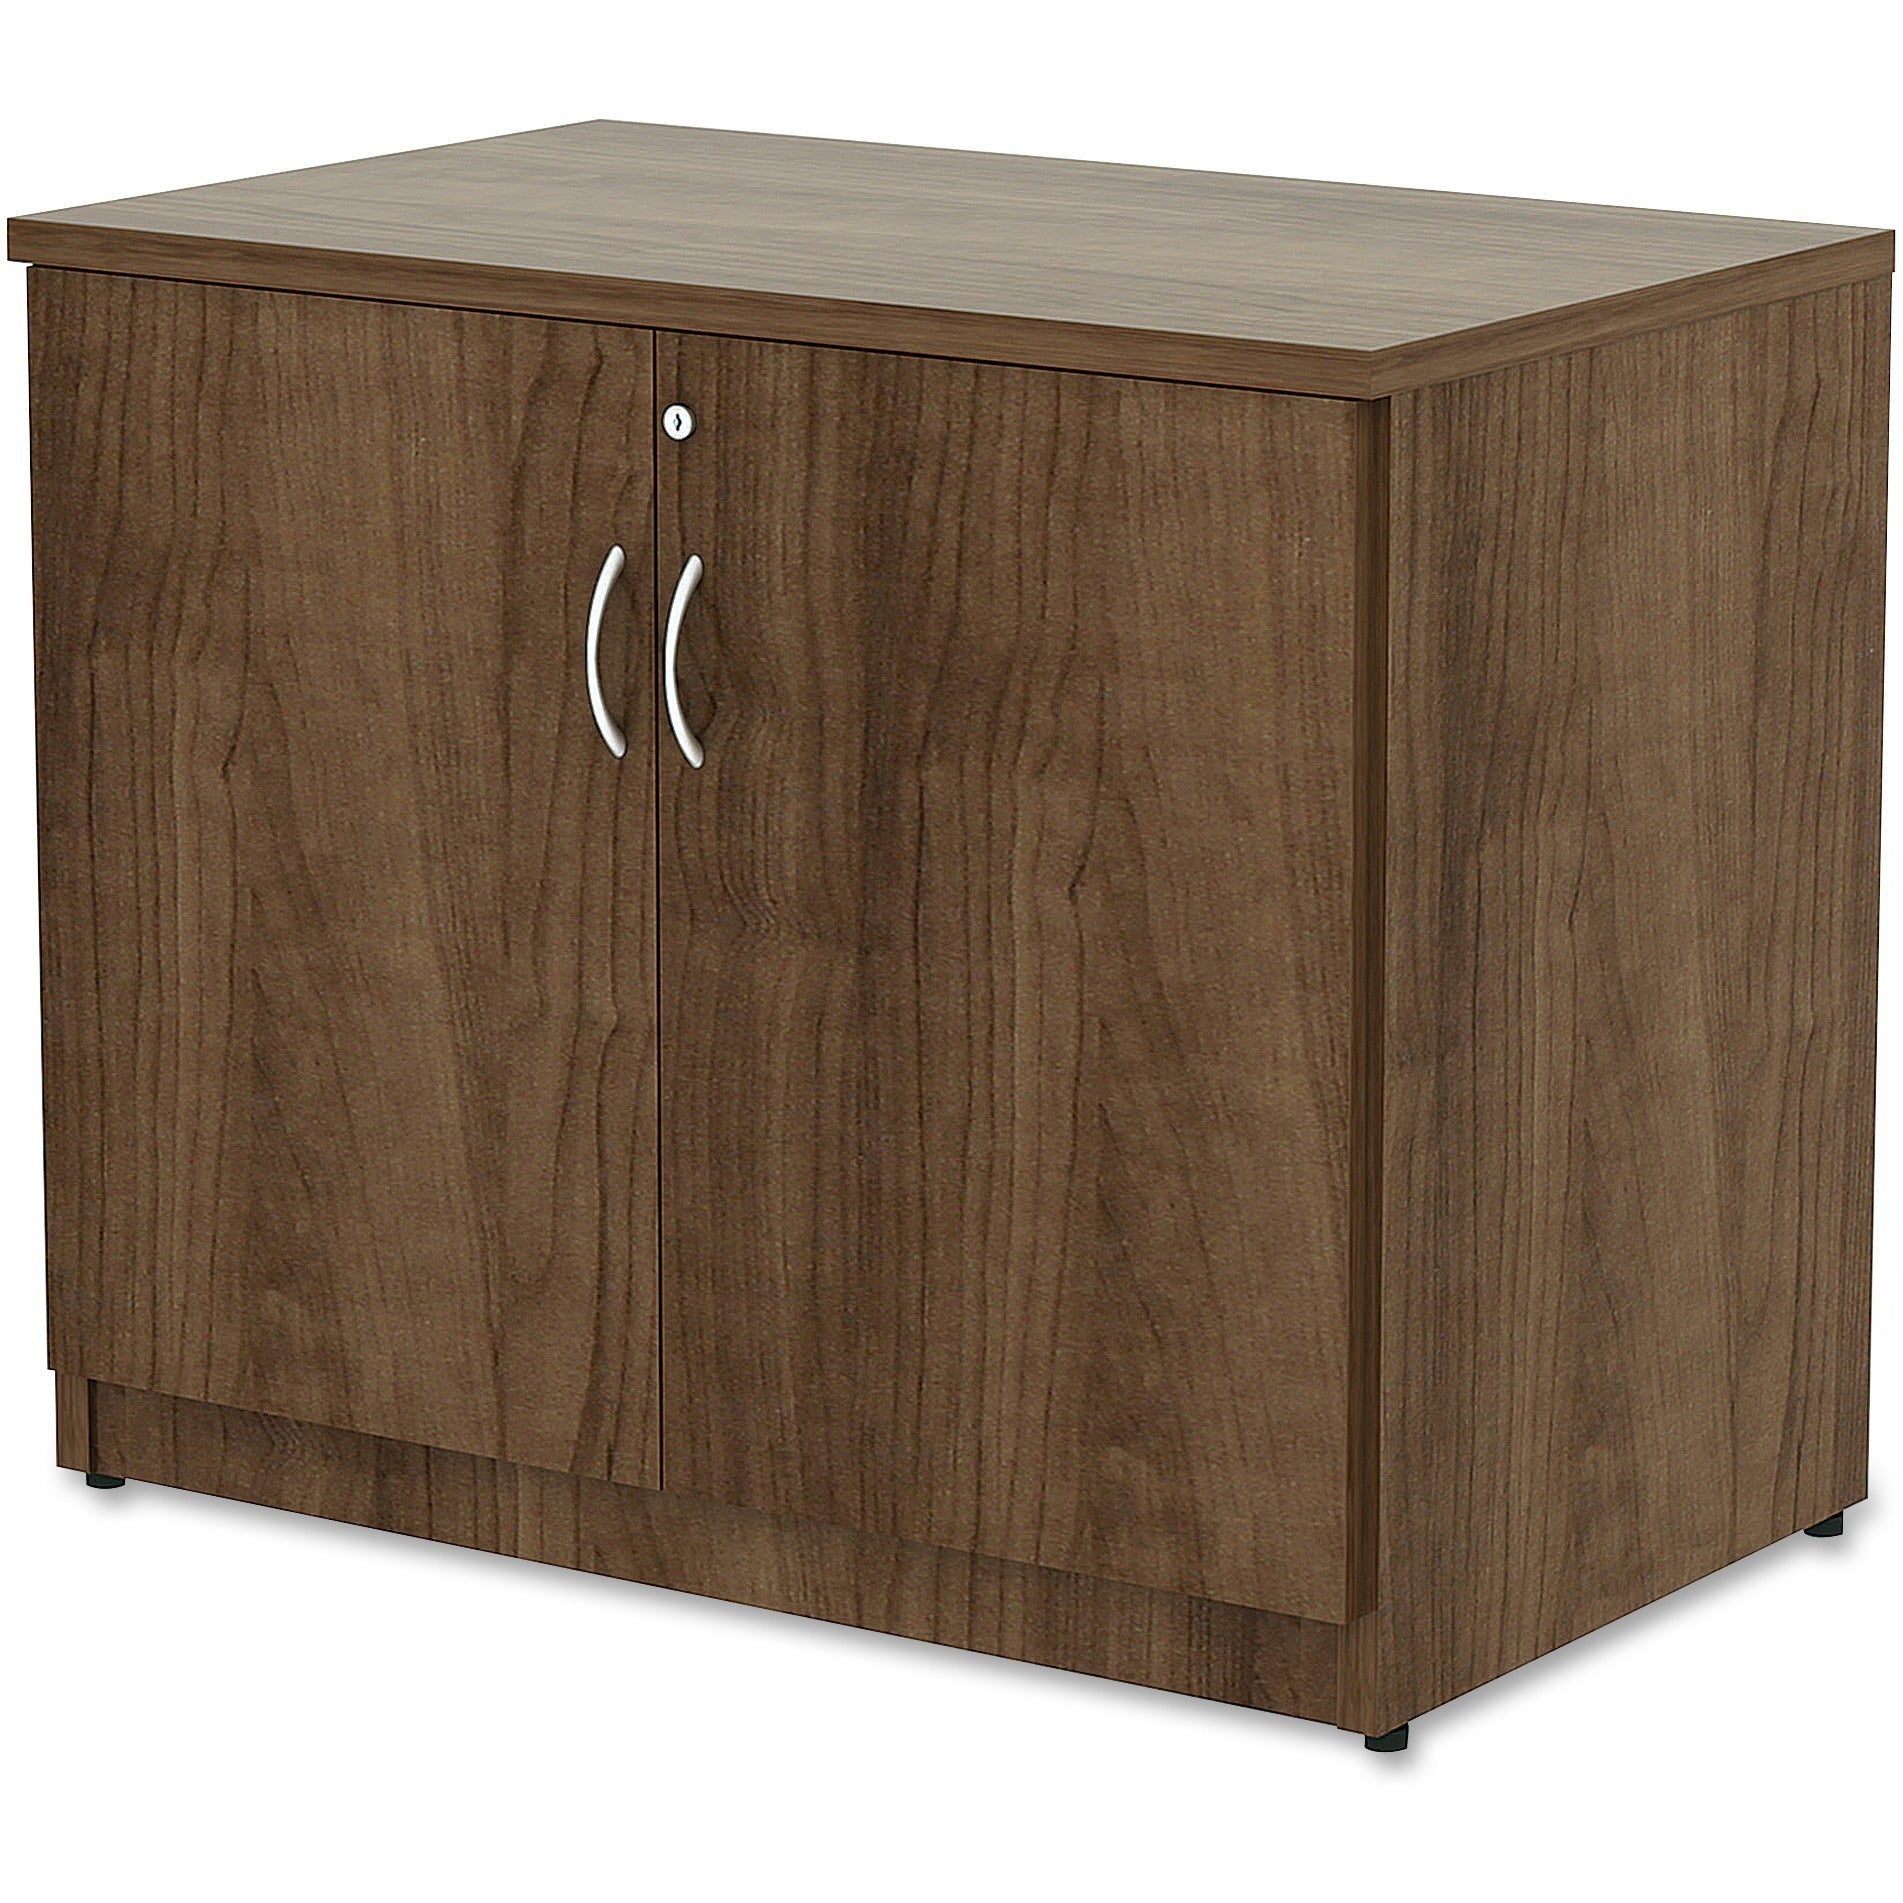 Lorell Essentials Series 2-Door Storage Cabinet - 36" x 22.5" x 29.5" - Glide, Lockable - Walnut - Laminate - Metal - 3